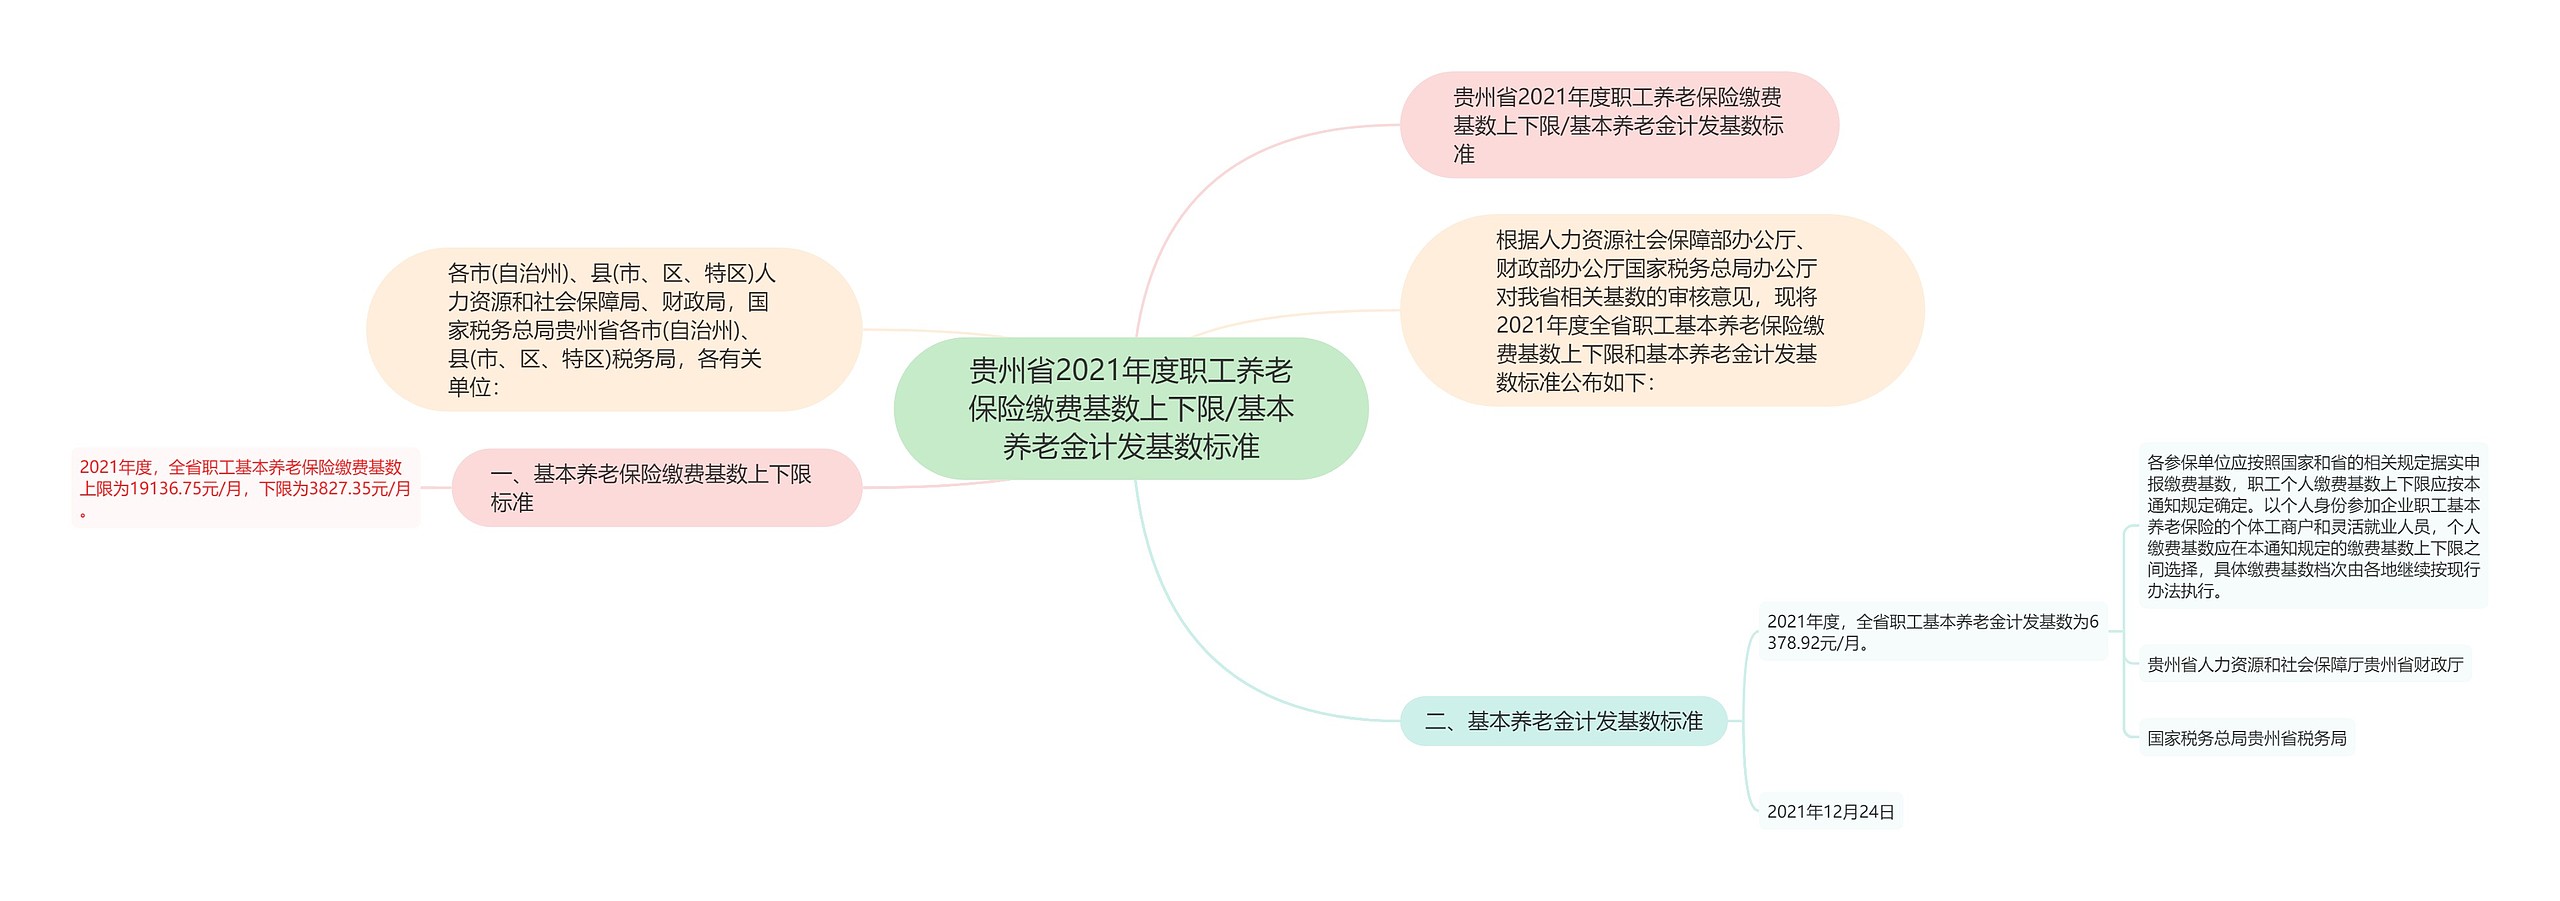 贵州省2021年度职工养老保险缴费基数上下限/基本养老金计发基数标准思维导图